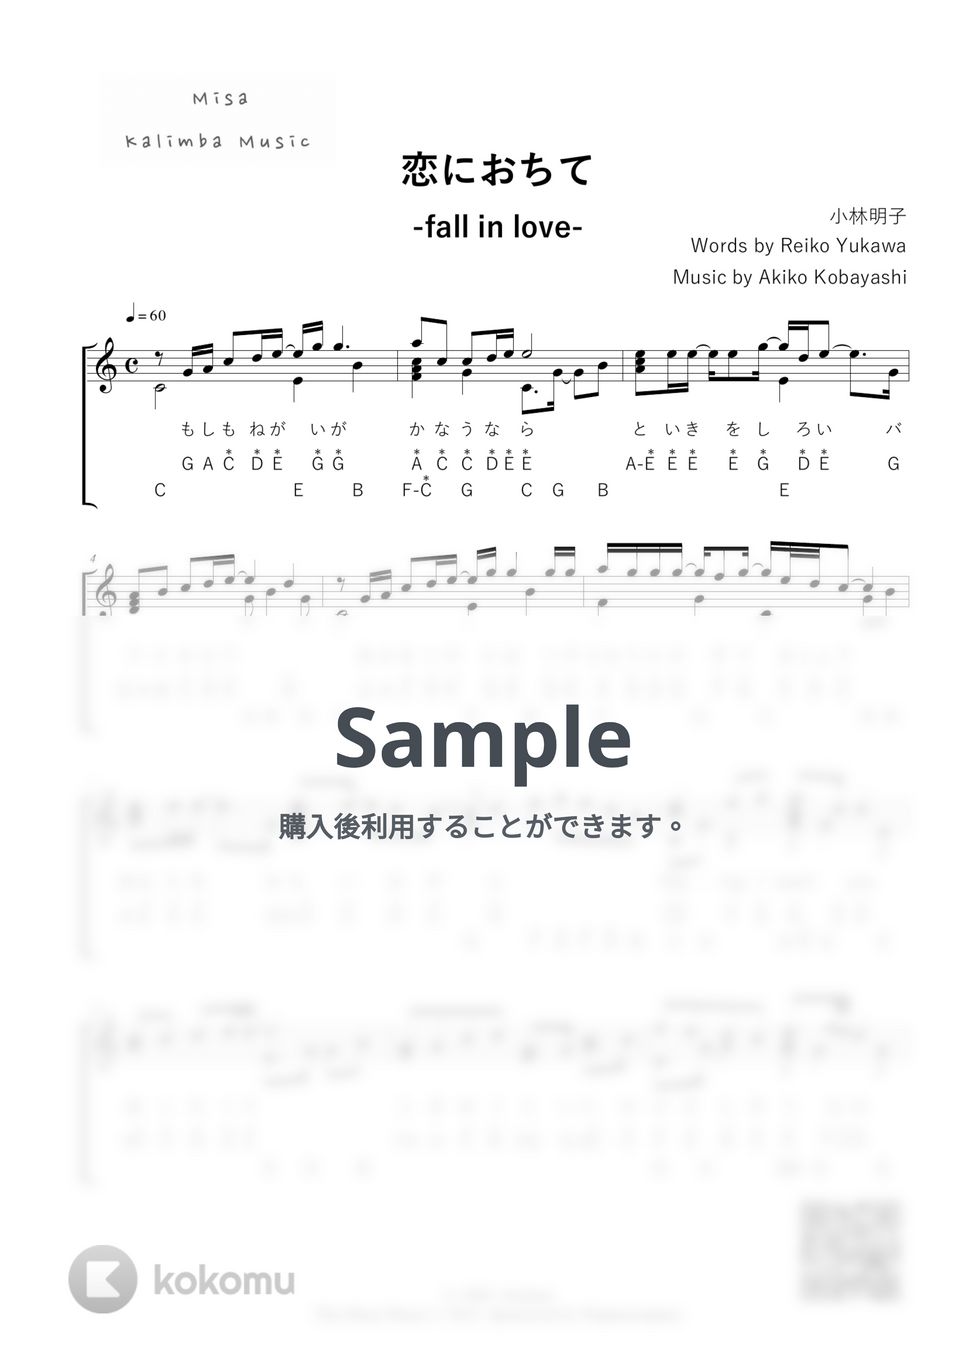 小林明子 - 恋におちて-Fall in love- / 英音名表記 / 17音カリンバ (歌詞付き/ 模範演奏付き) by Misa / Kalimba Music